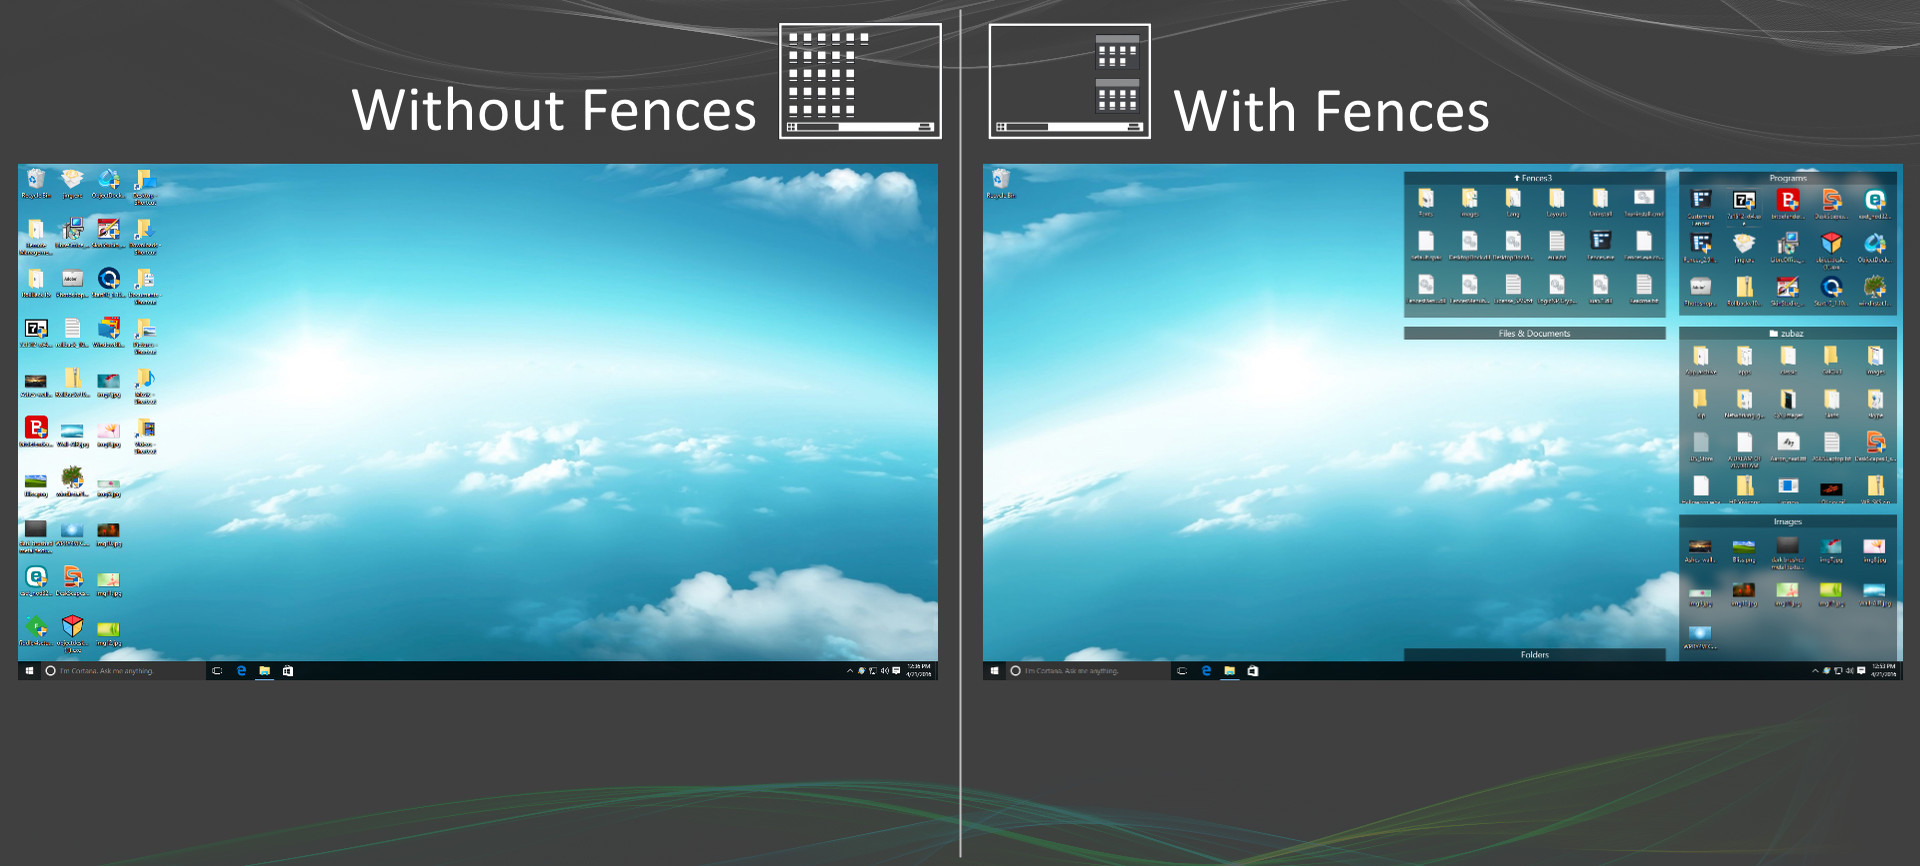 桌面整理软件Stardock Fences 4.21 for Win破解版下载插图